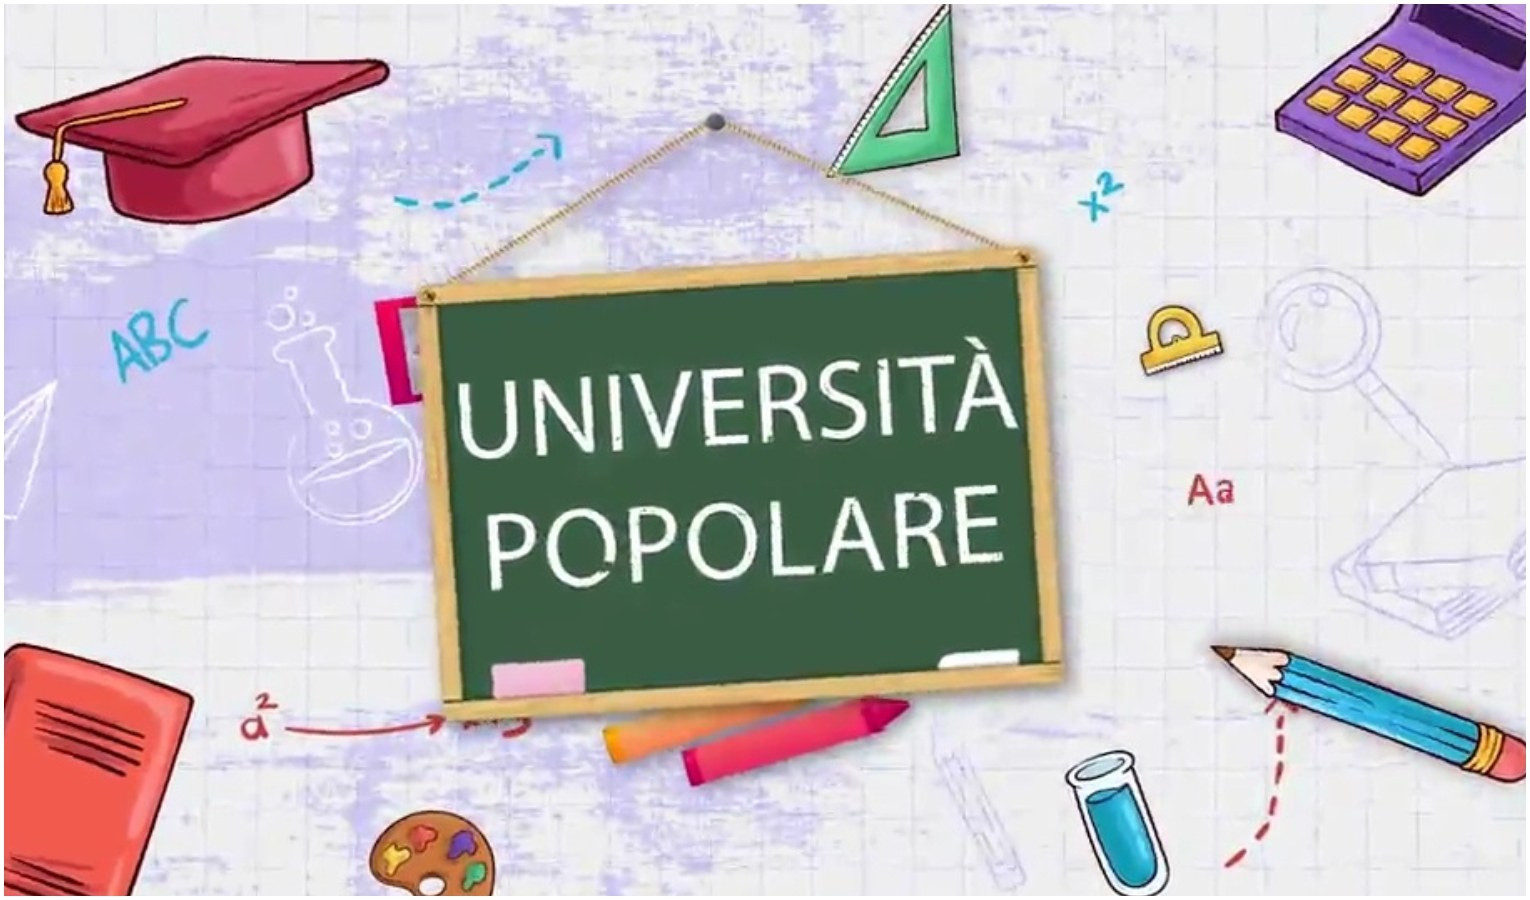 Università popolare - L'articolo